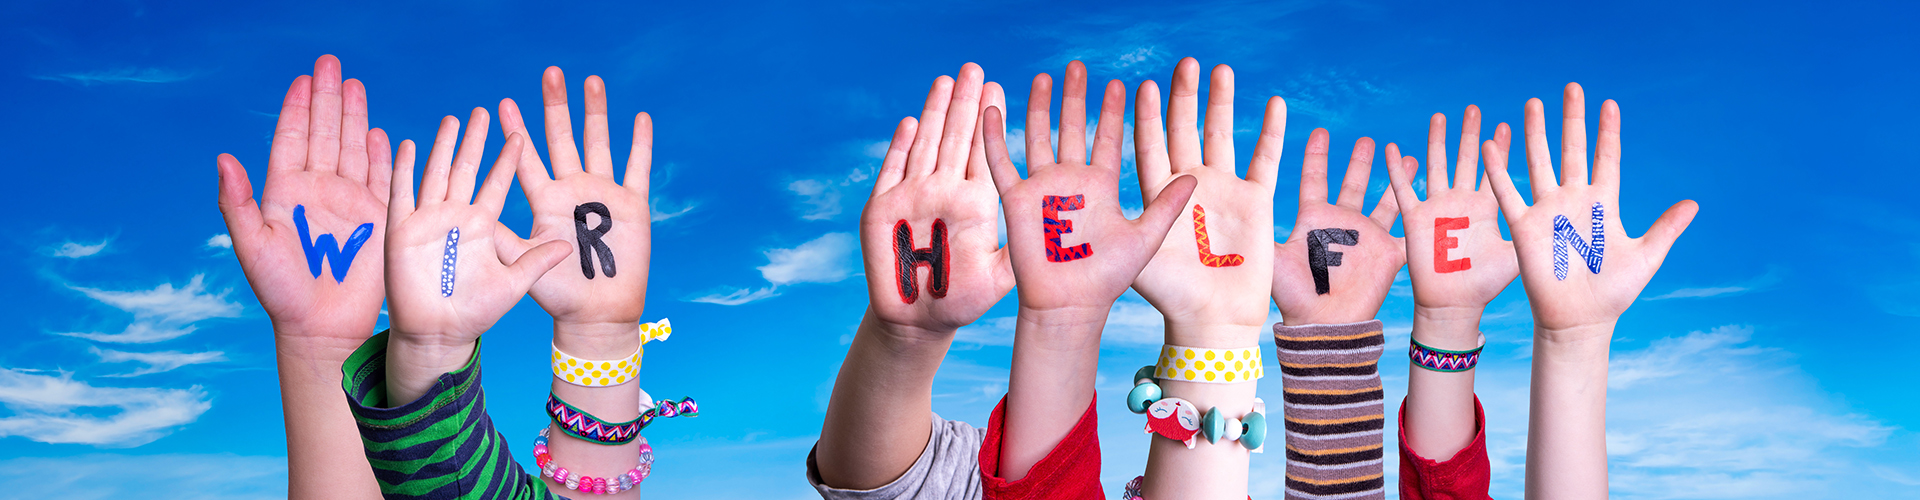 Kinderhände halten bunte Buchstaben in die Höhe, aus denen sich das Wort "Wir helfen" zusammensetzt; es handelt sich um das lizenzierte Stockfoto Nr. 335502821 von Nelos